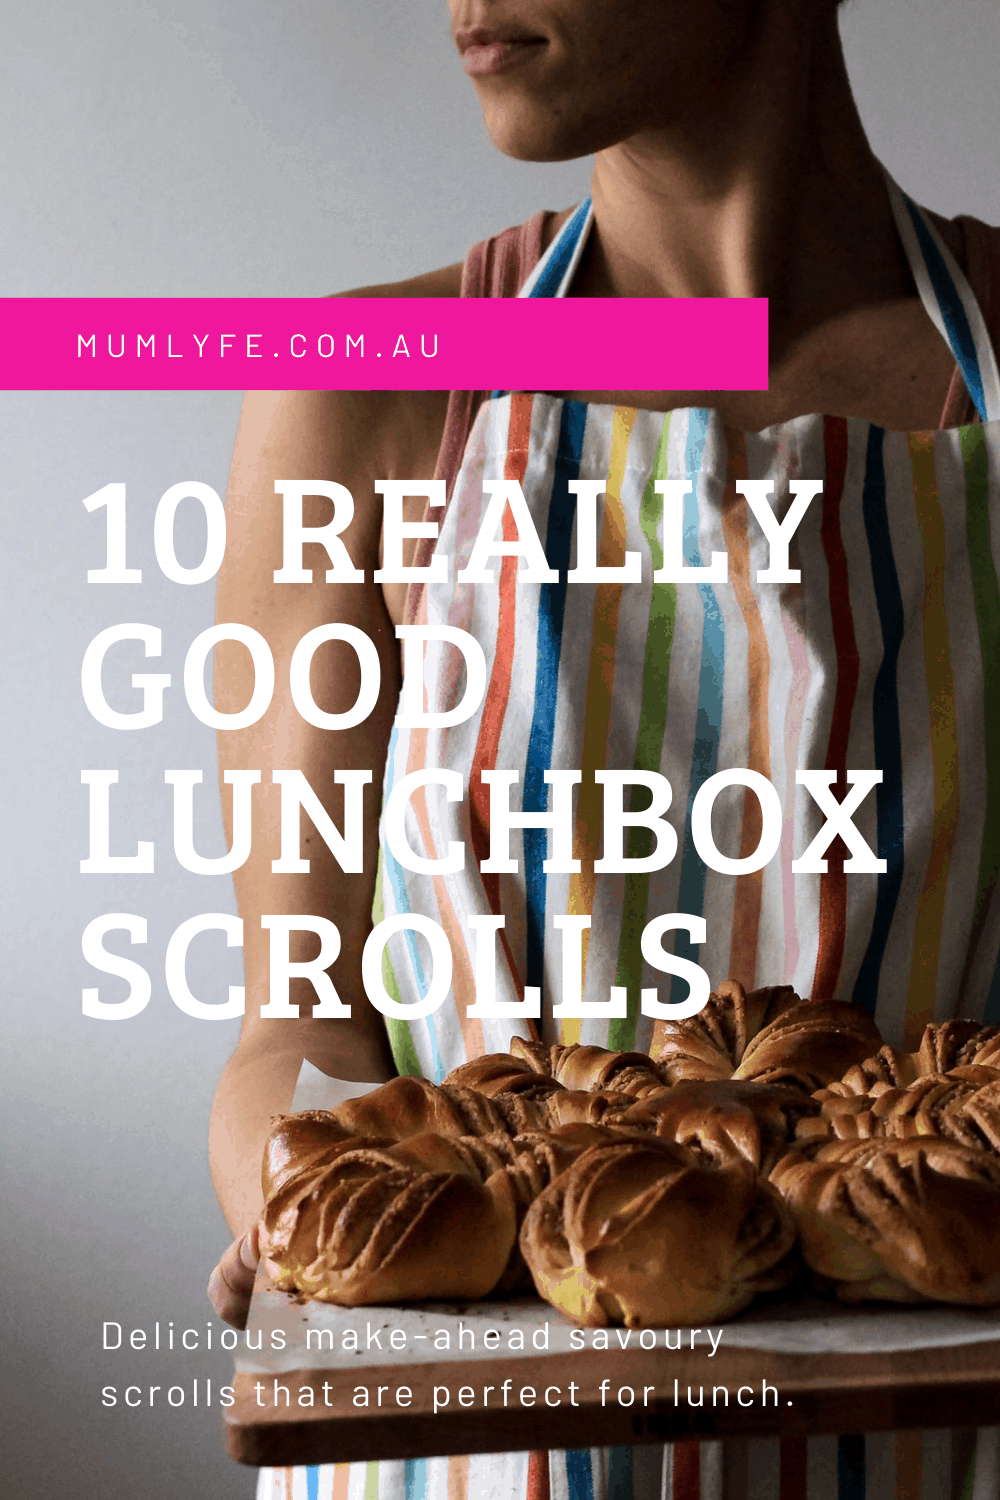 10 REALLY GOOD LUNCHBOX SCROLLS